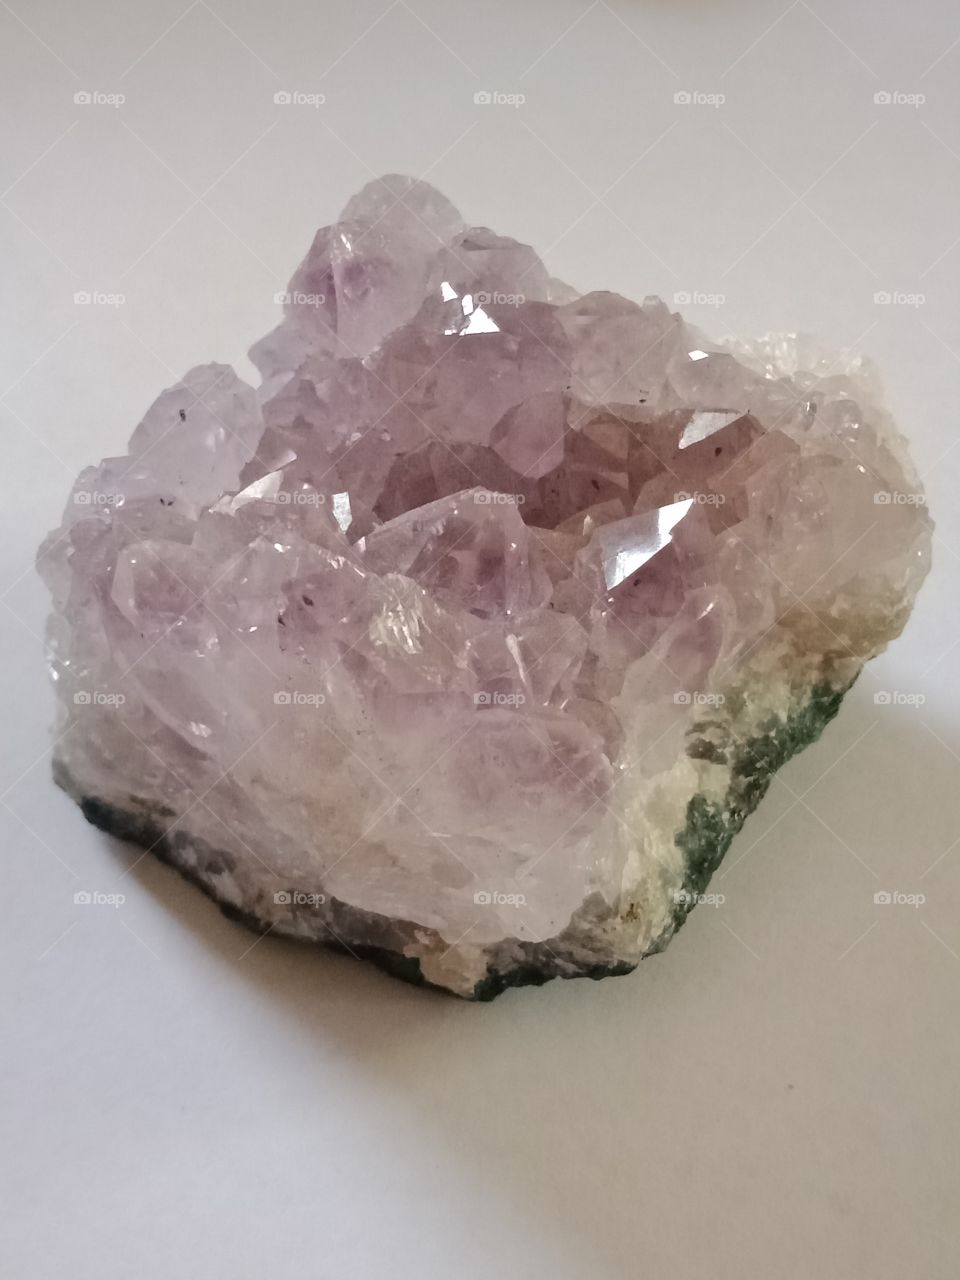 an amethyst crystal